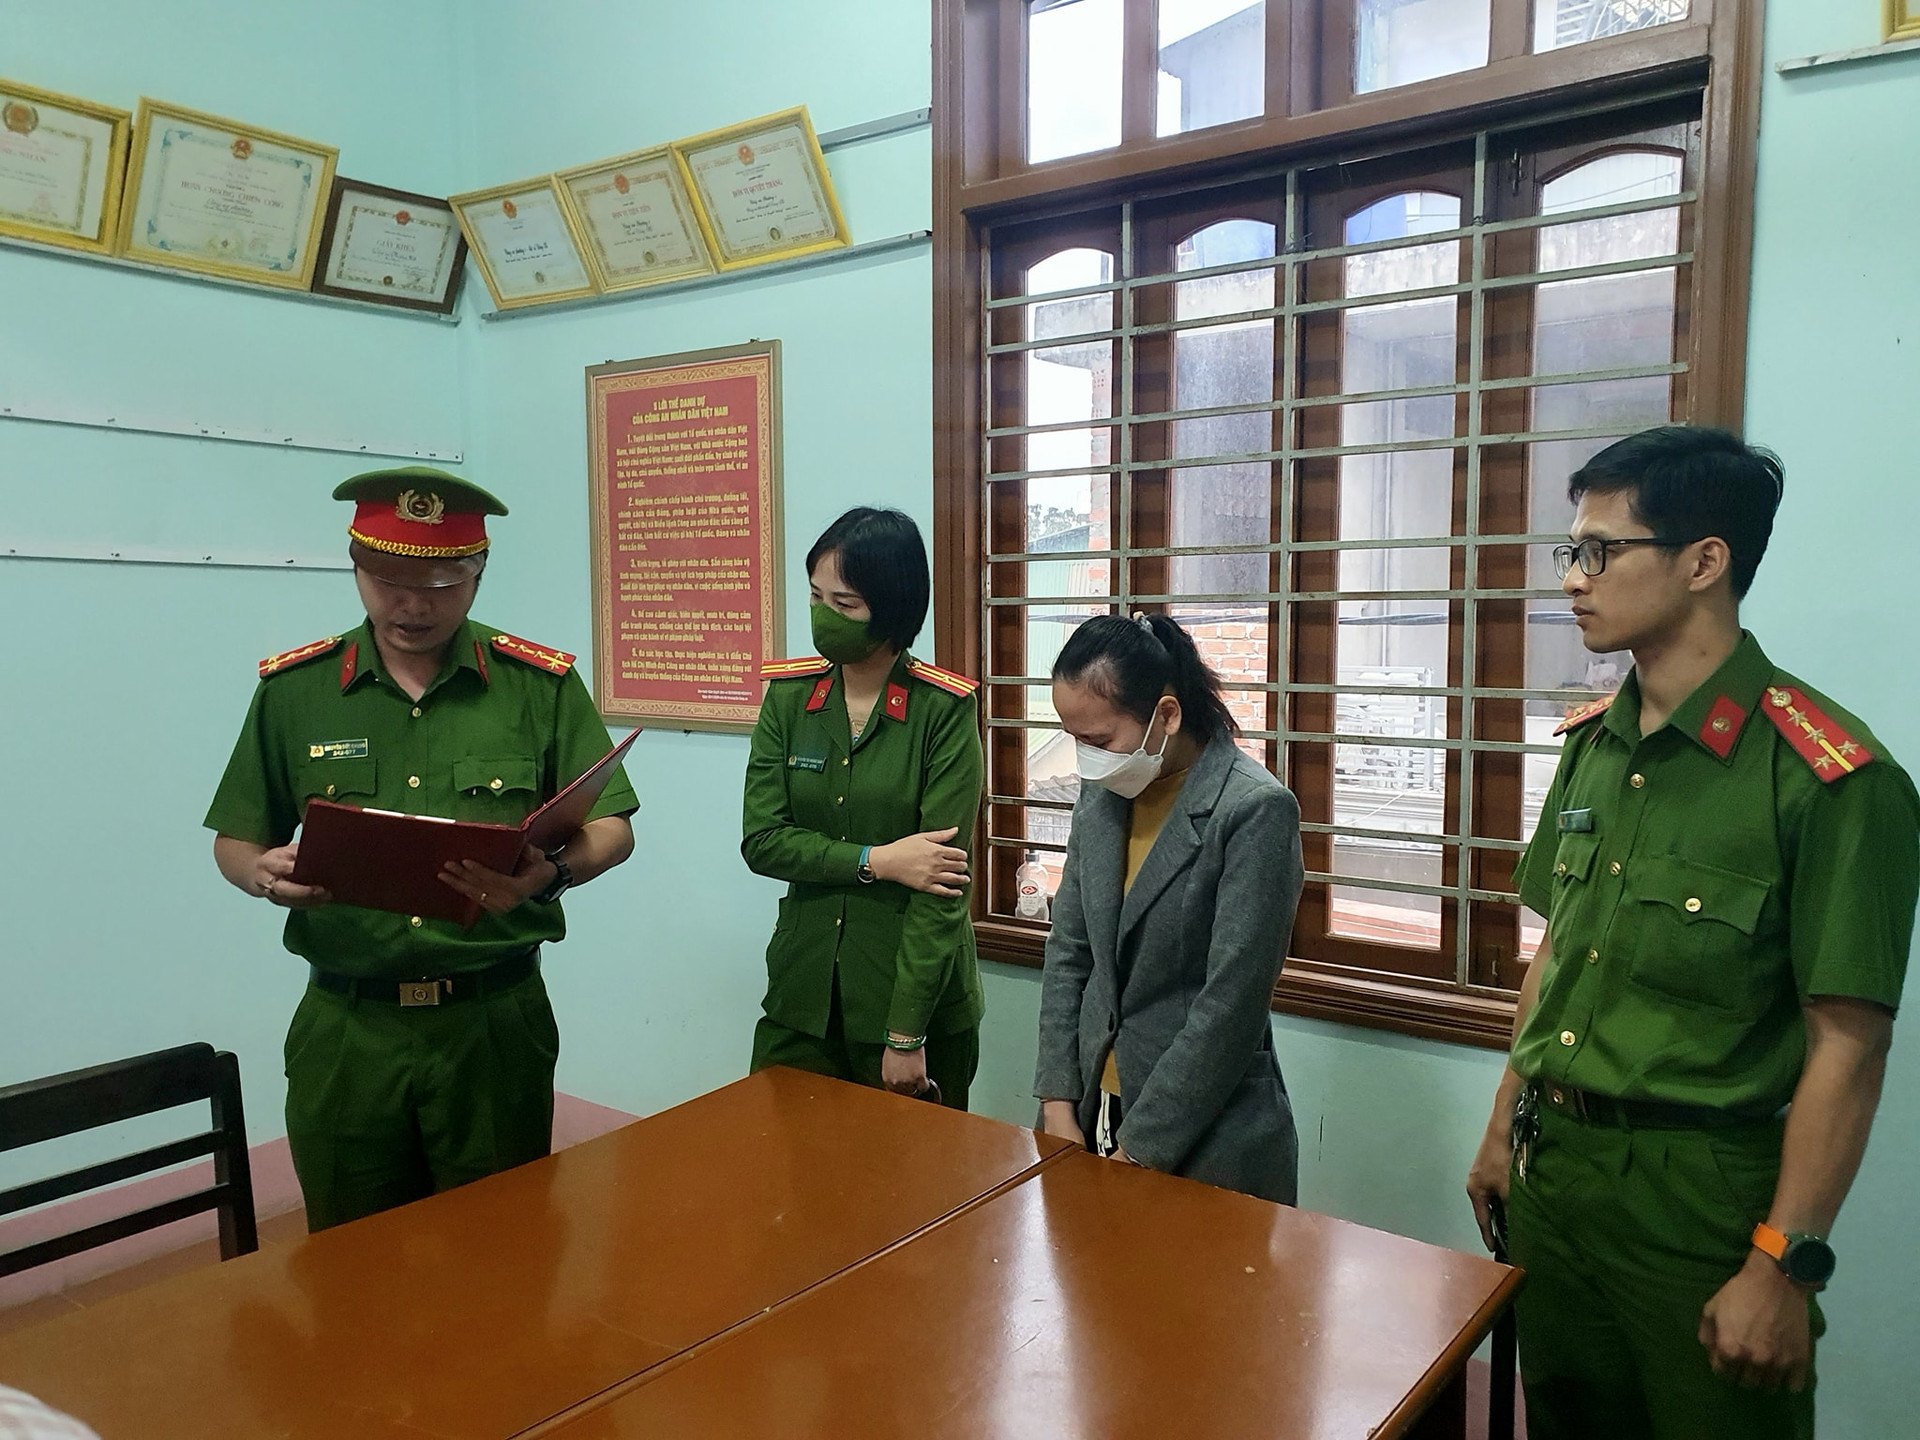 Hồ Thị Hương Loan bị bắt tạm giam về hành vi “Lừa đảo chiếm đoạt tài sản”. Ảnh: CA.